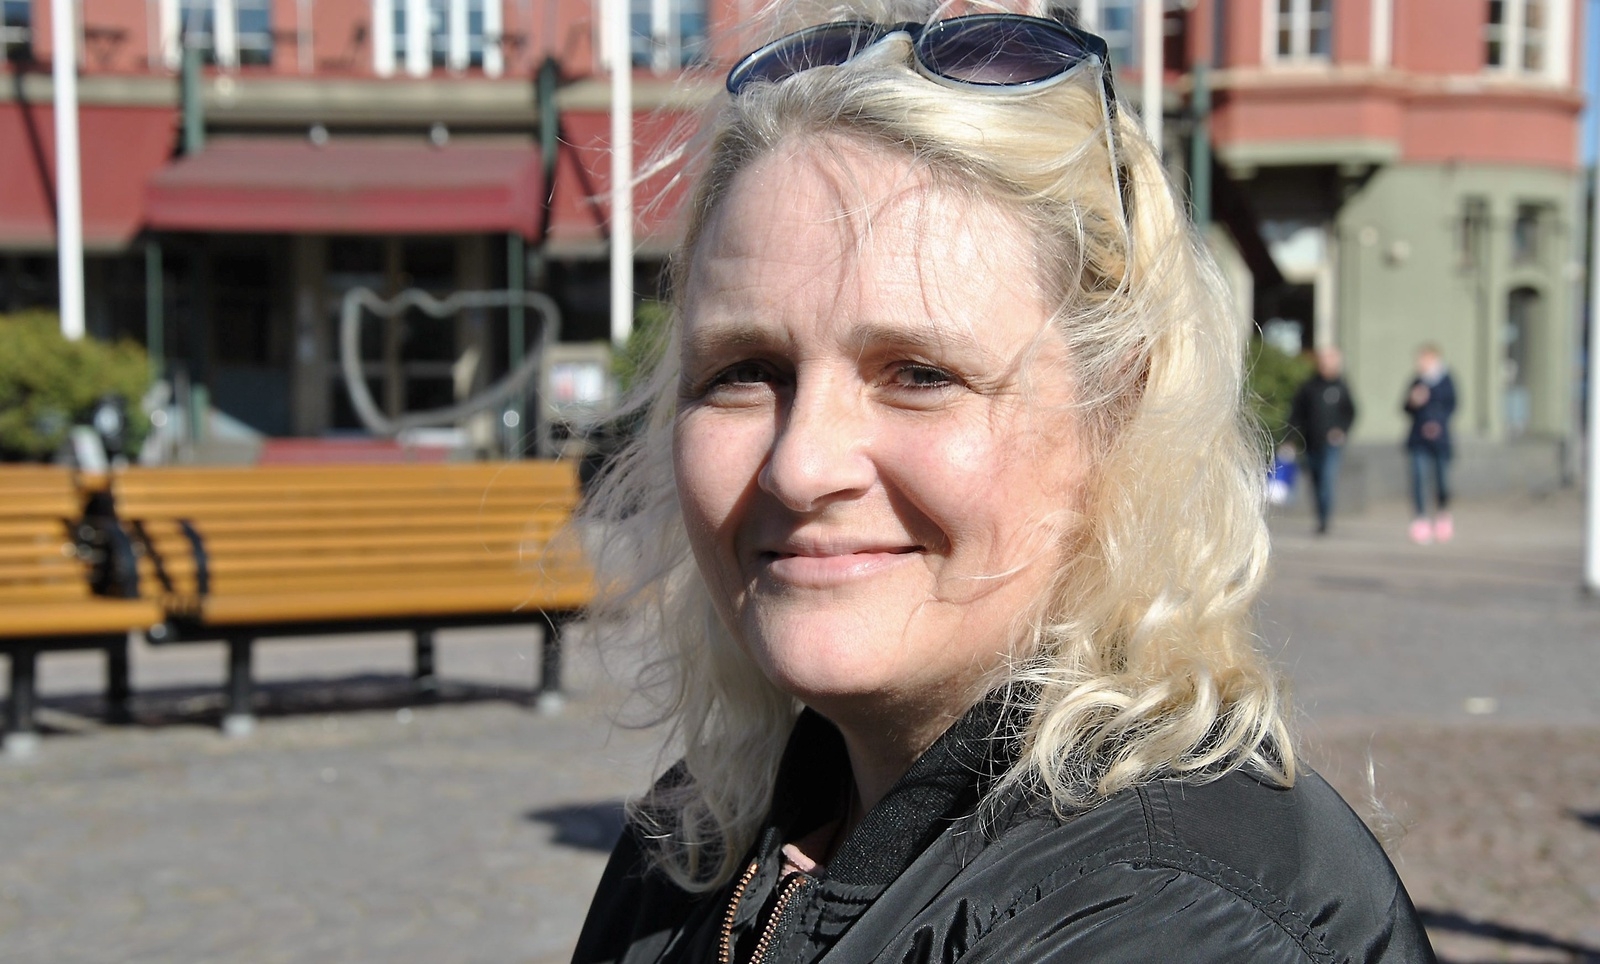 Årets Vardagshjälte, kandidat nr 5 är Ingela Hansson, som driver Hemlösas förenning i Hässleholm.
Foto: Maja Ögren Andersson